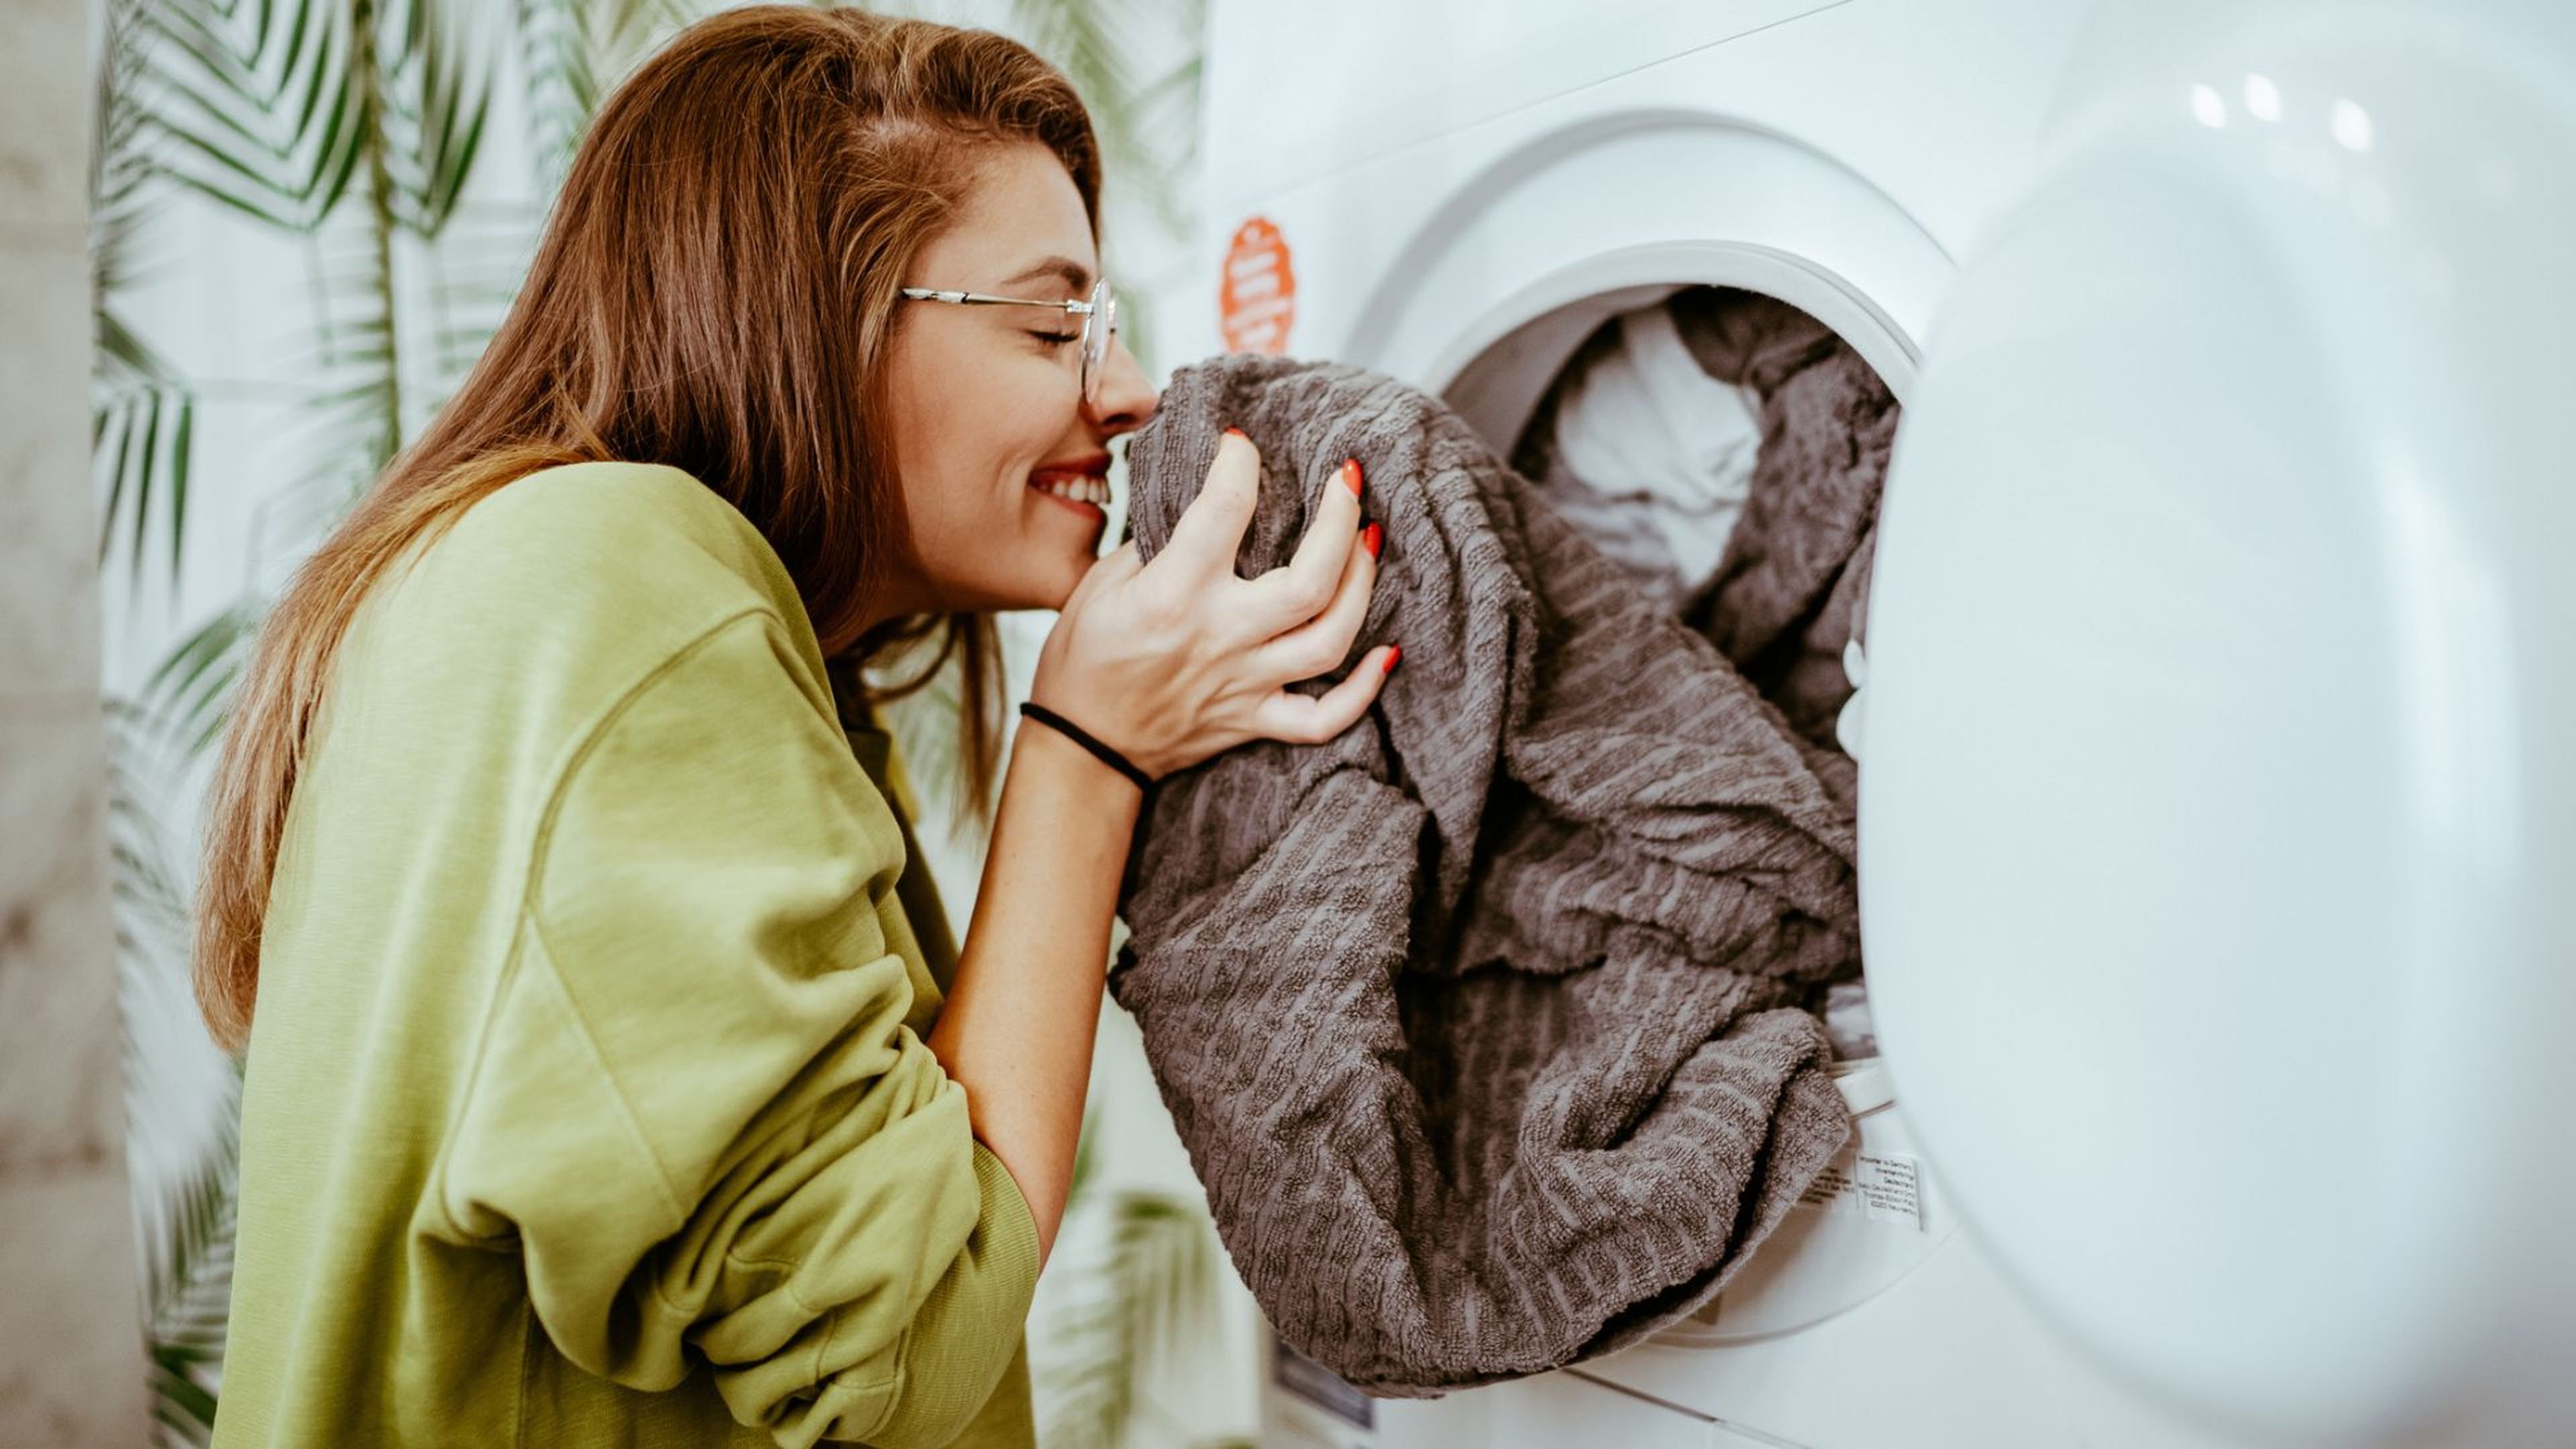 Una mujer huele un albornoz recién sacado de la lavadora.